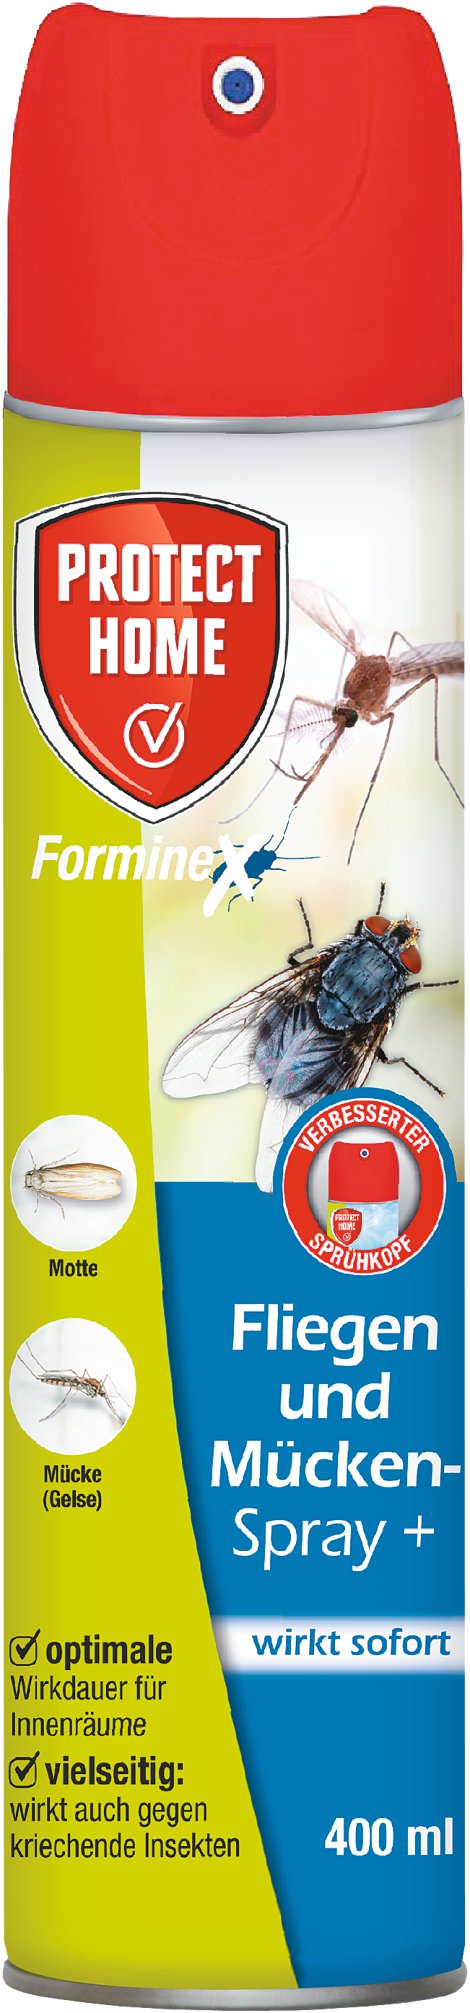 PROTECT HOME FormineX Fliegen und Mücken Spray + 400 ml